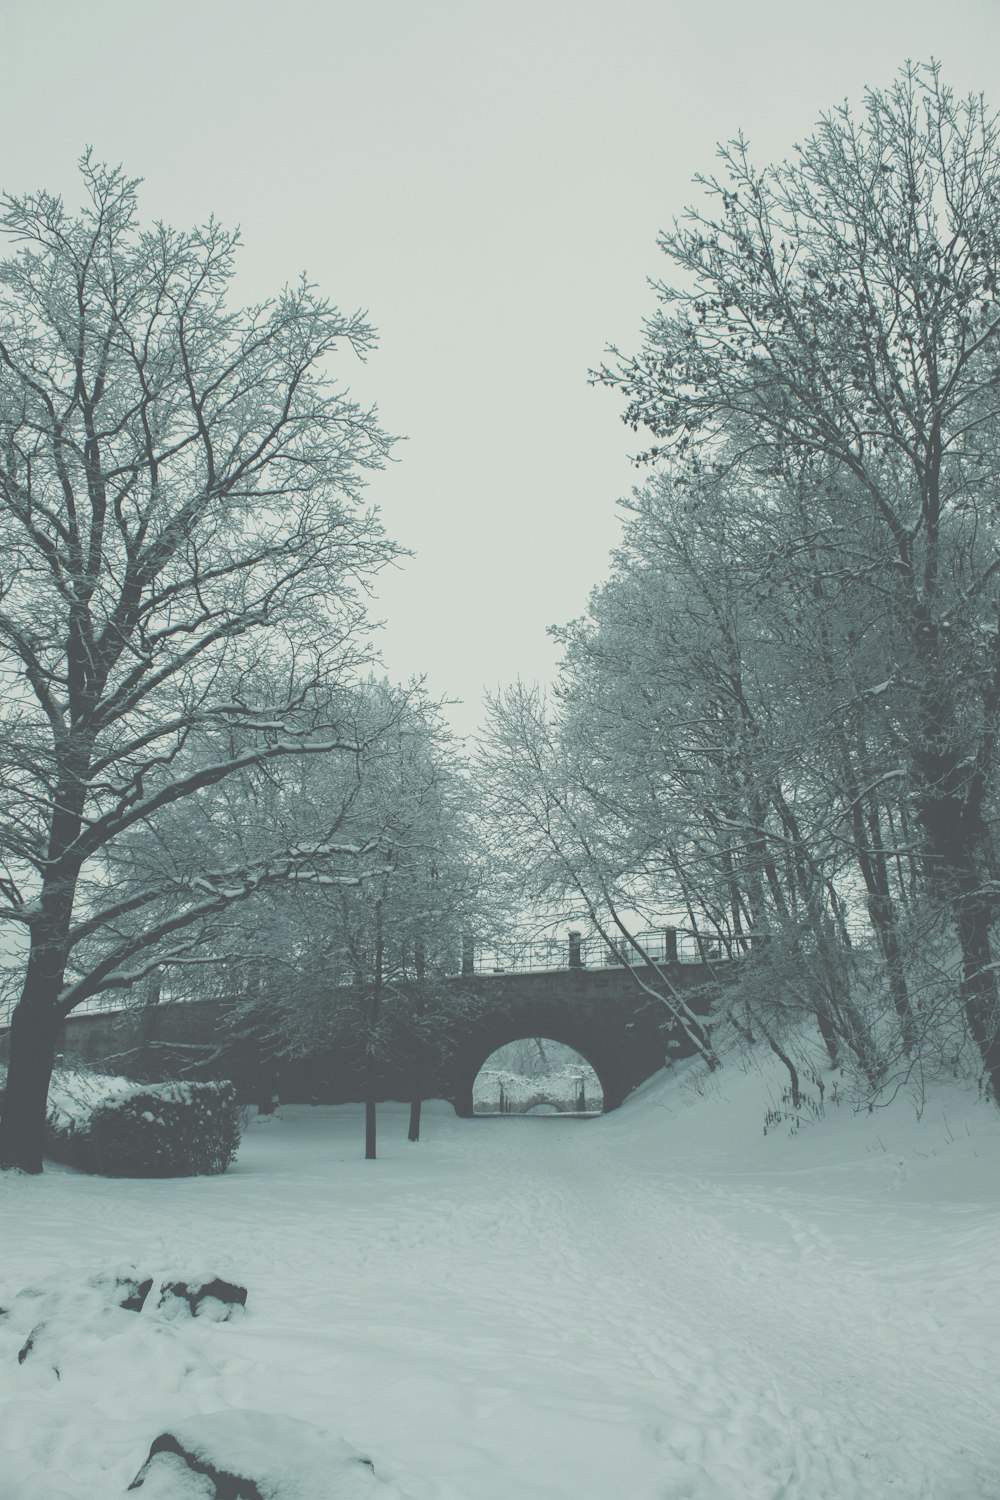 公園の雪に覆われた川に架かる橋